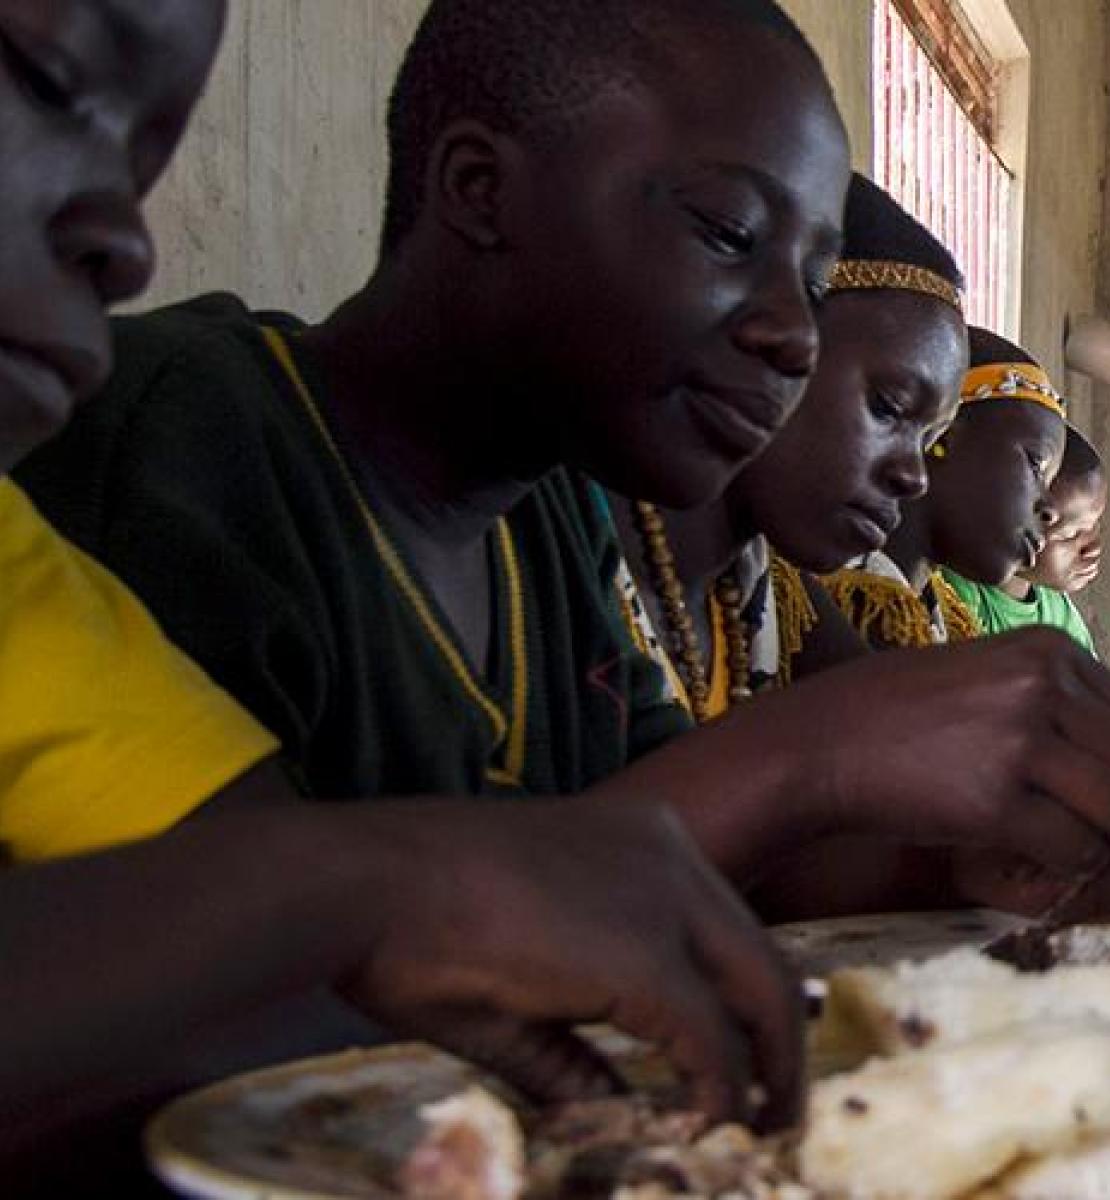  乌干达里拉综合养鱼场的学生们正在吃午餐，该渔场是农业和粮食安全南南合作机构。 